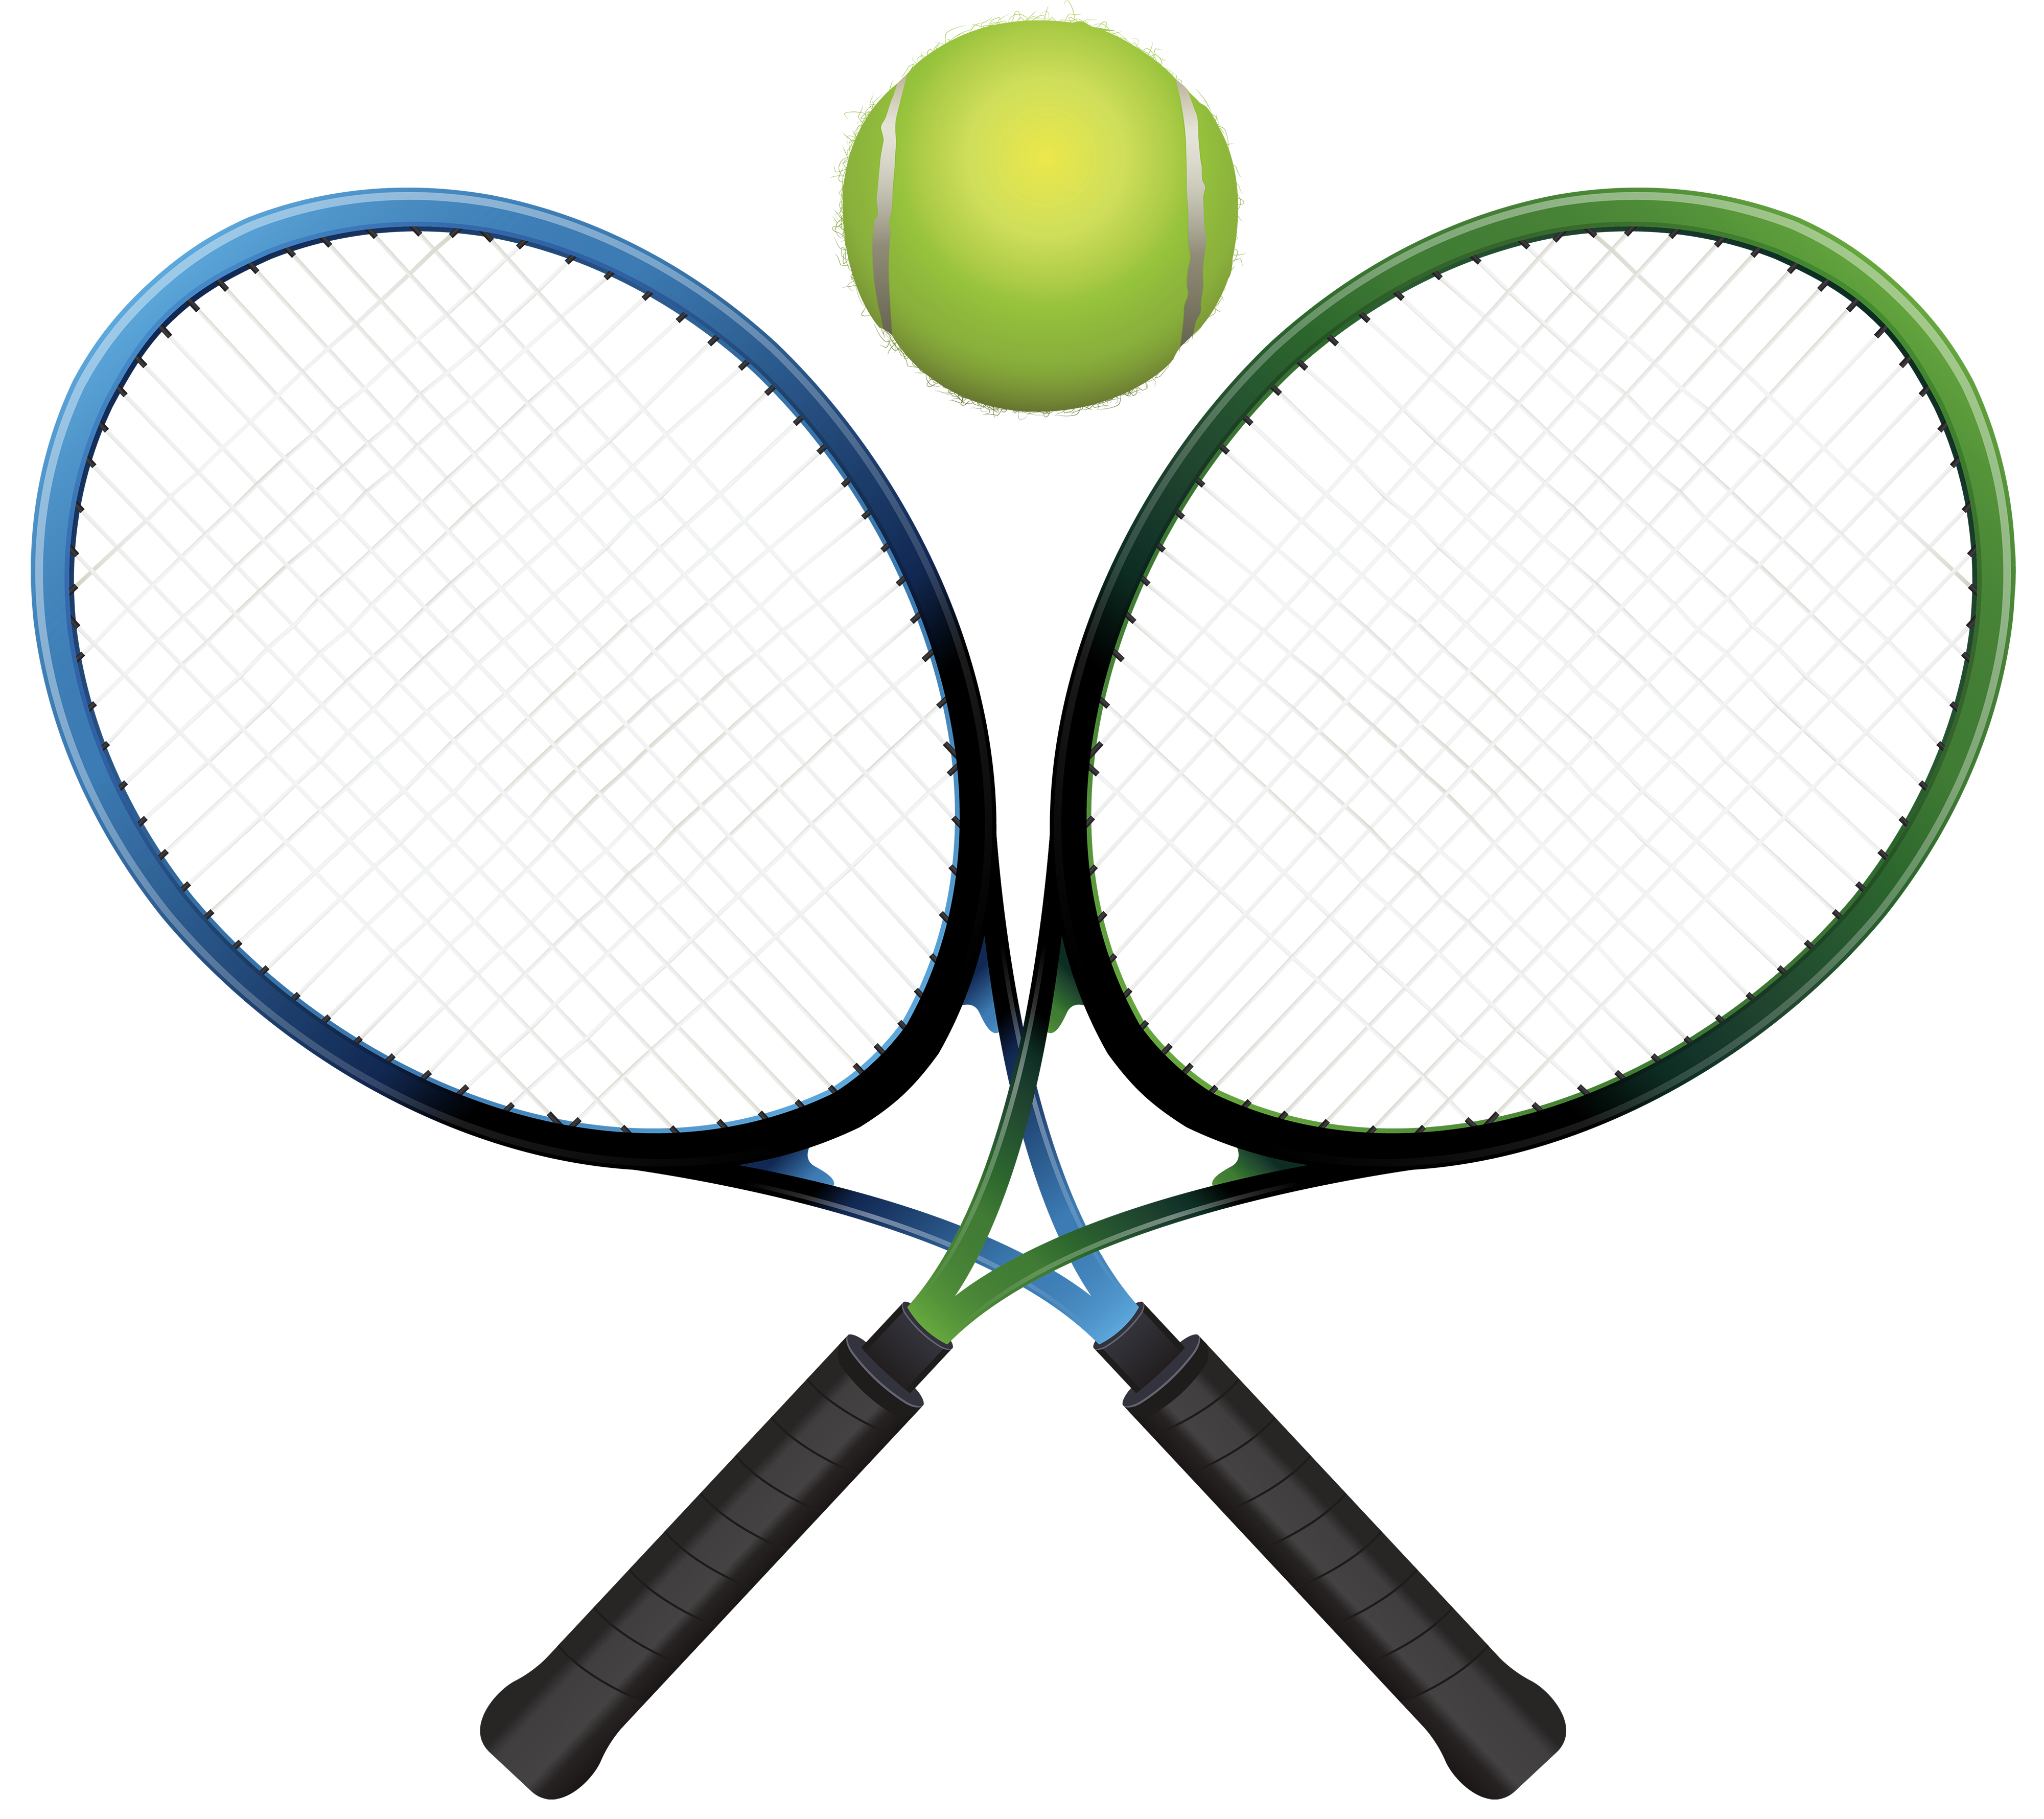 Immagine Trasparente della palla da tennis e della racchetta